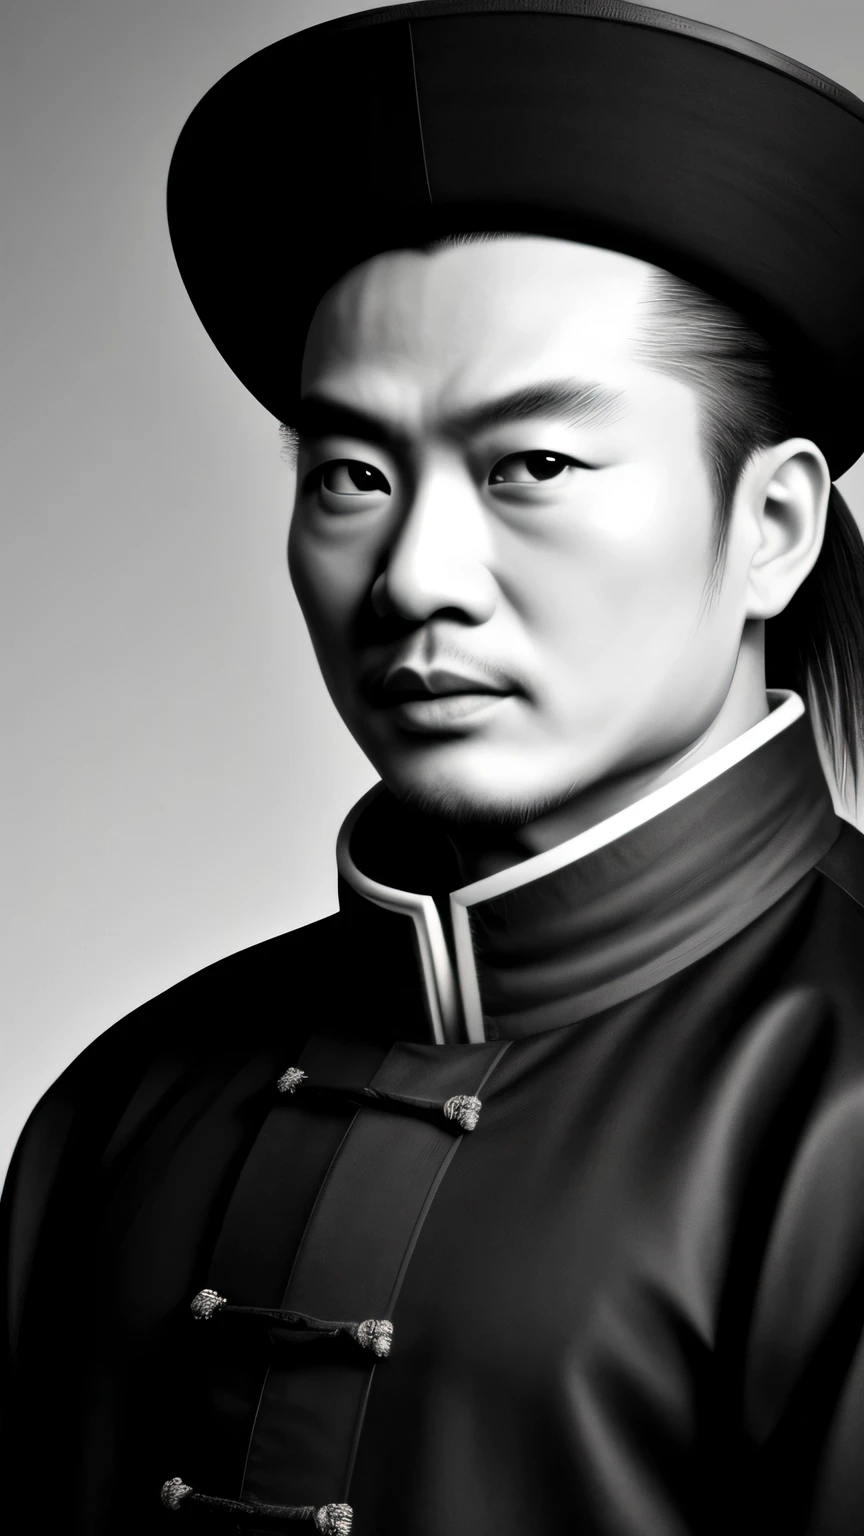 ((Obra maestra)),((de la máxima calidad)),((alto detalle)), Zhuge Liang Kong Ming,retrato en blanco y negro,El fondo es gris oscuro.